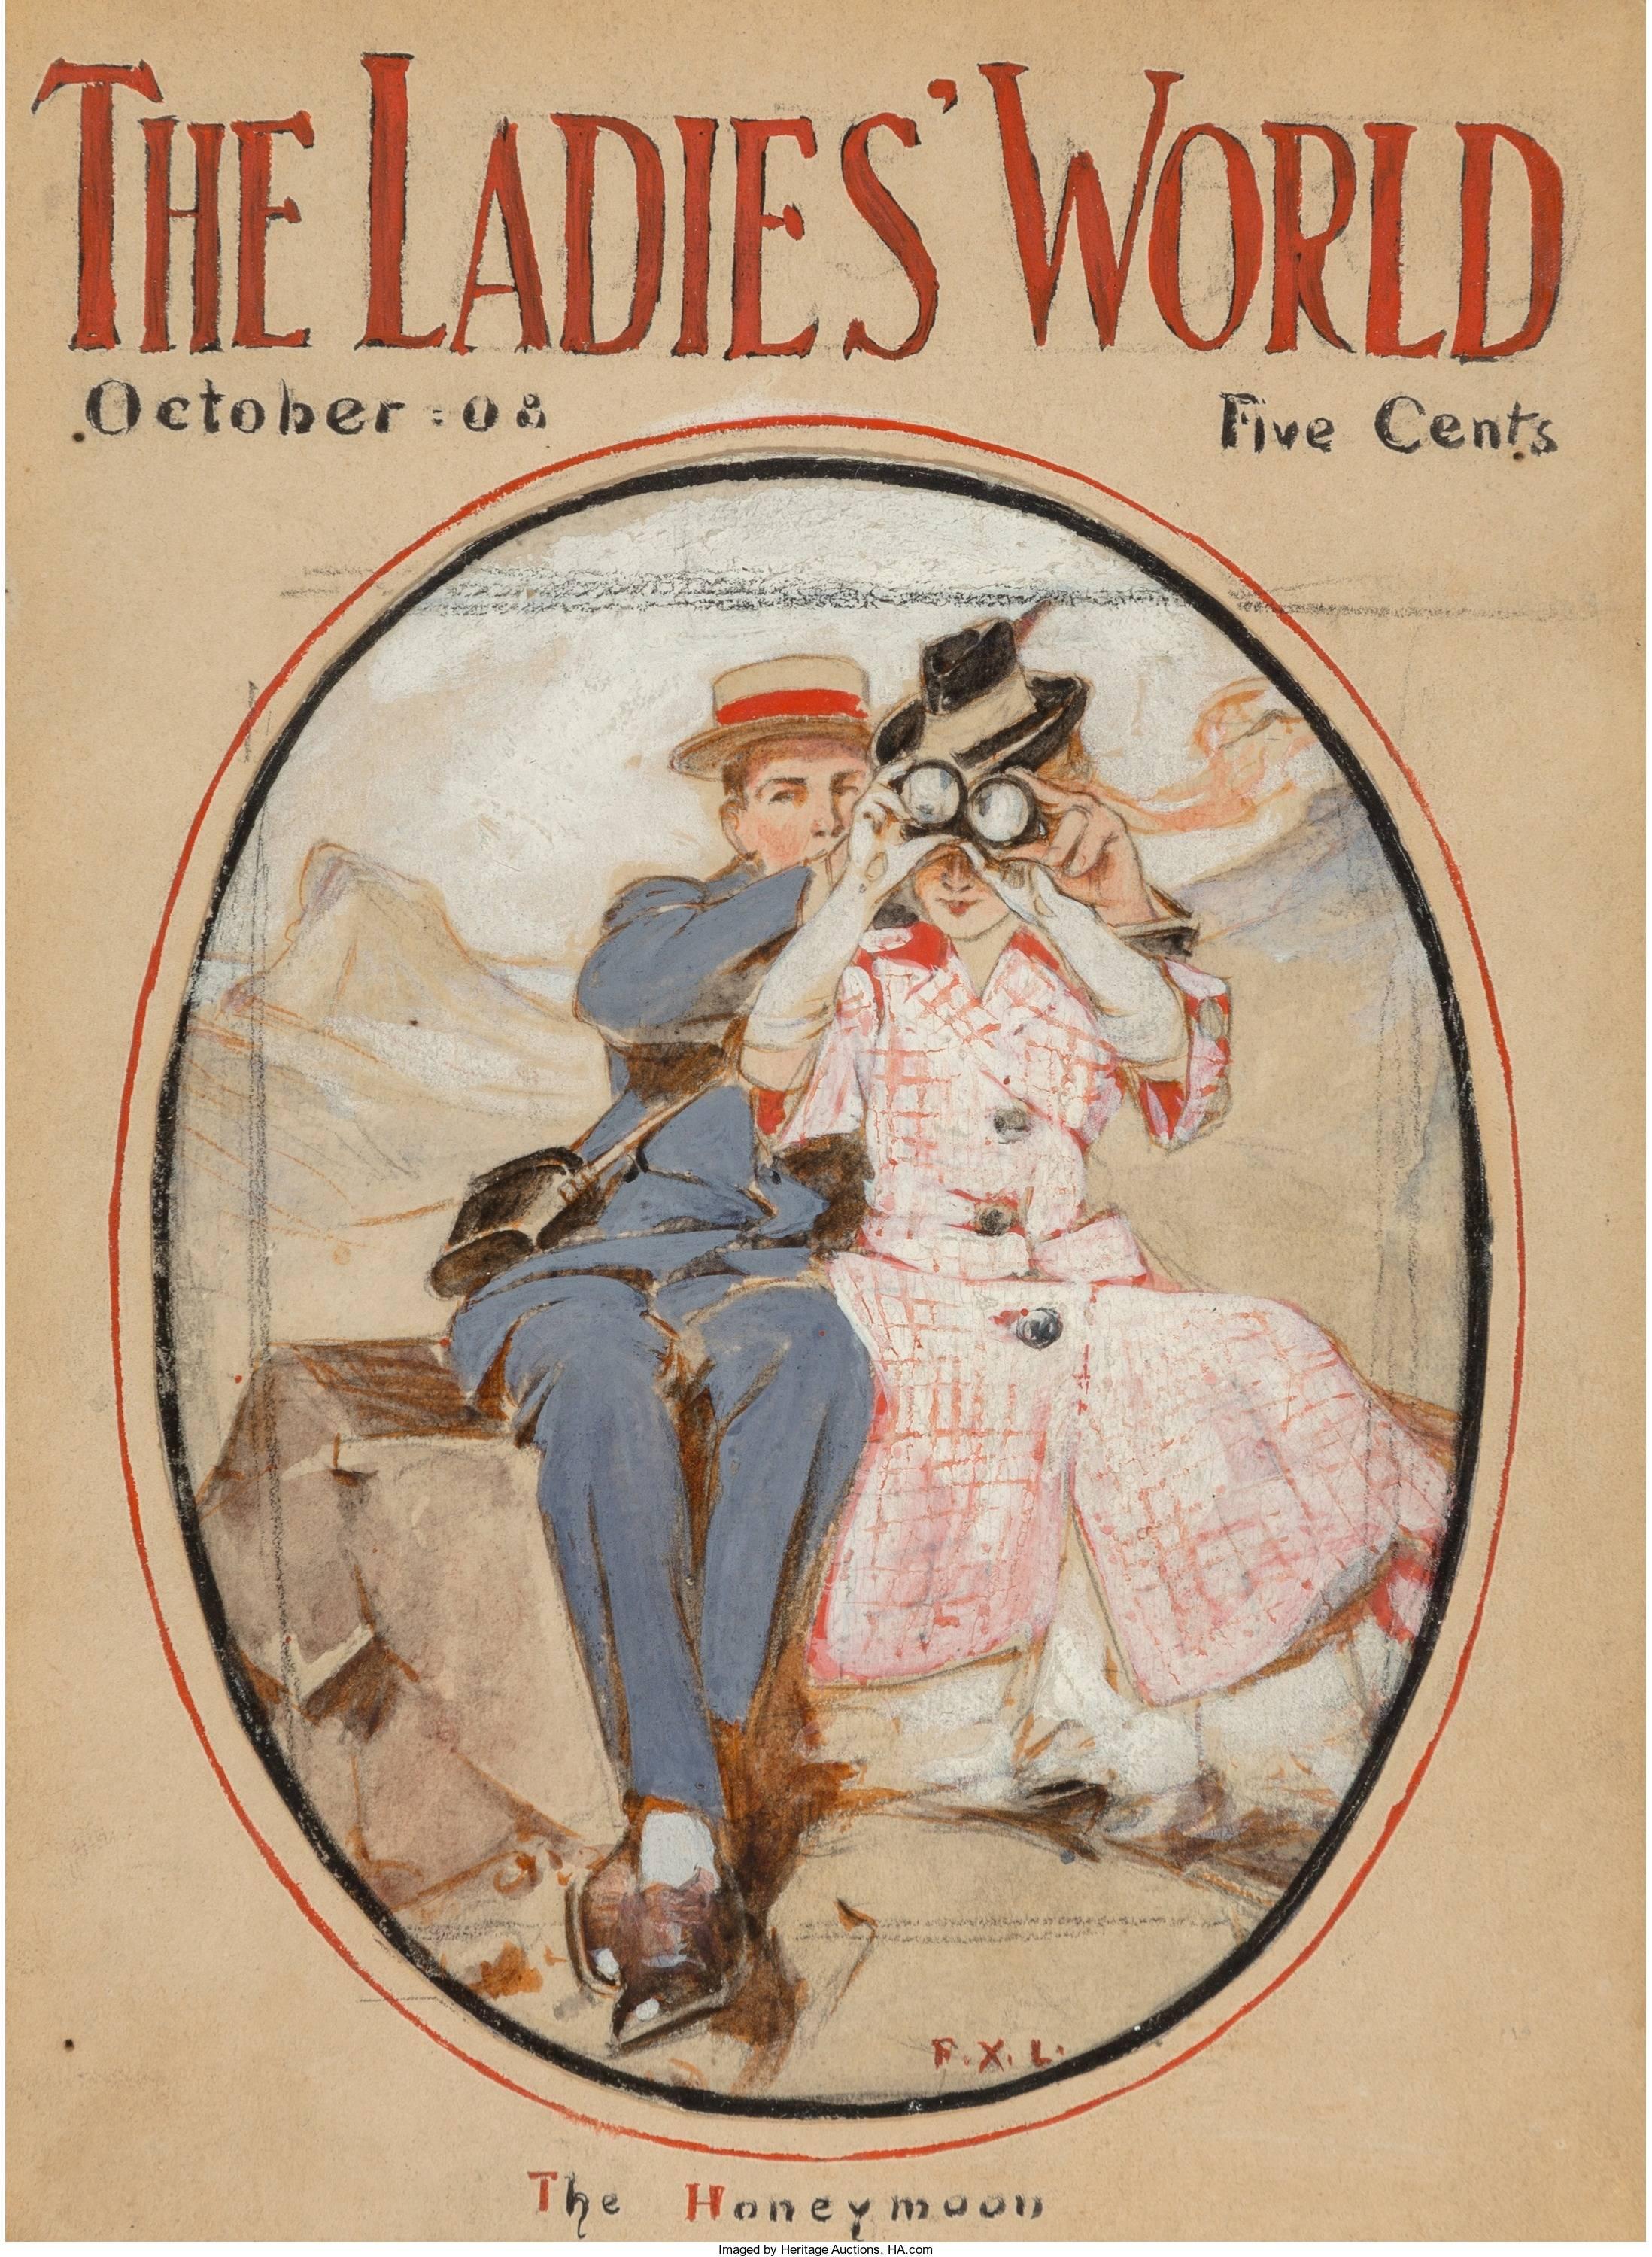 Frank Xavier Leyendecker Figurative Painting – The Honeymoon, Titelseite des Ladies World Magazine, Oktober 1908